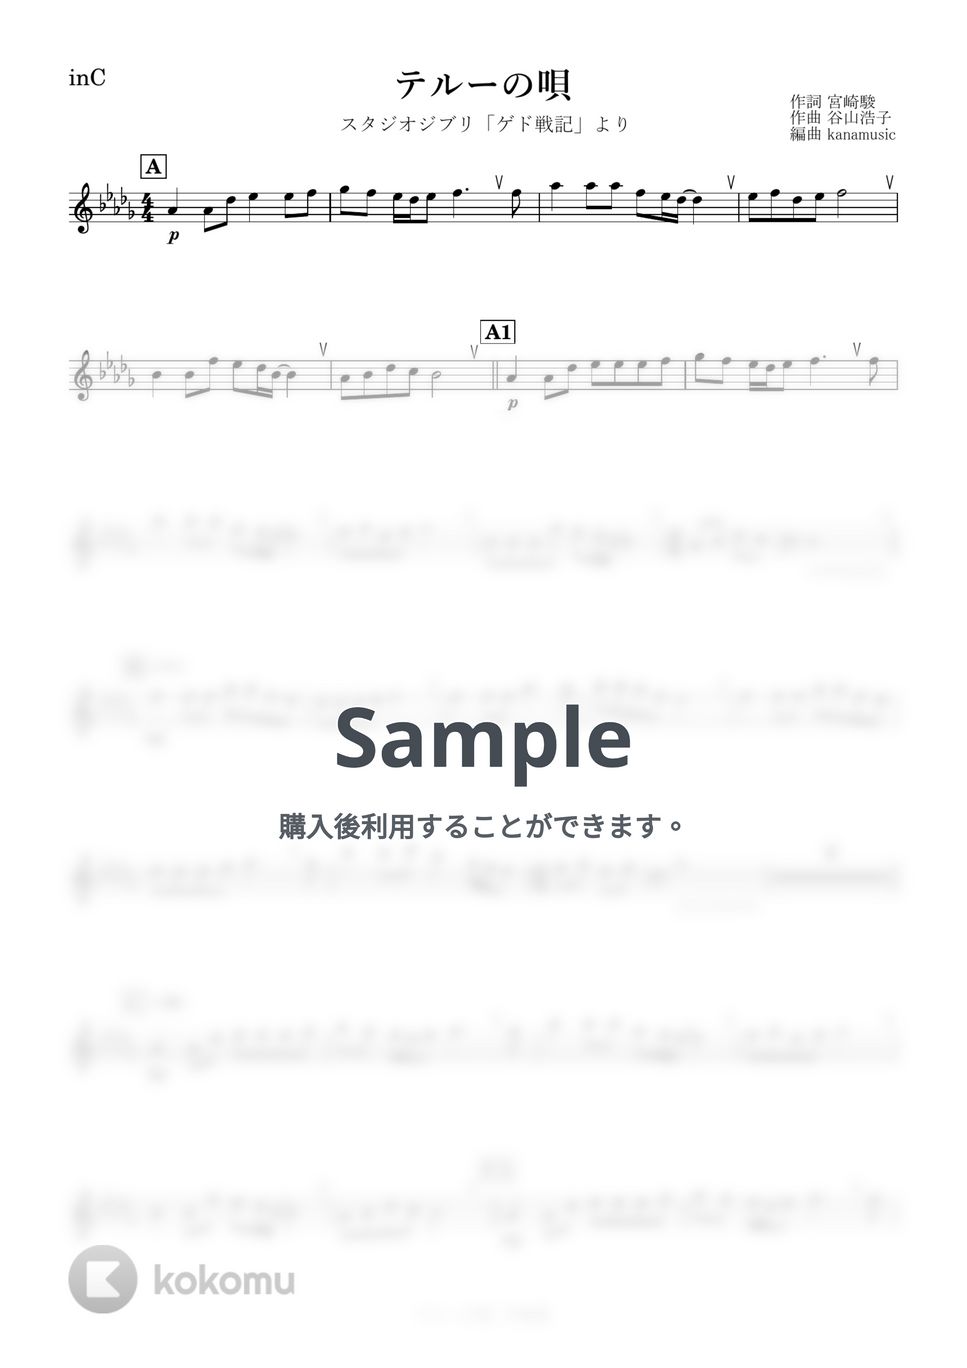 ゲド戦記 - テルーの唄 (C) by kanamusic